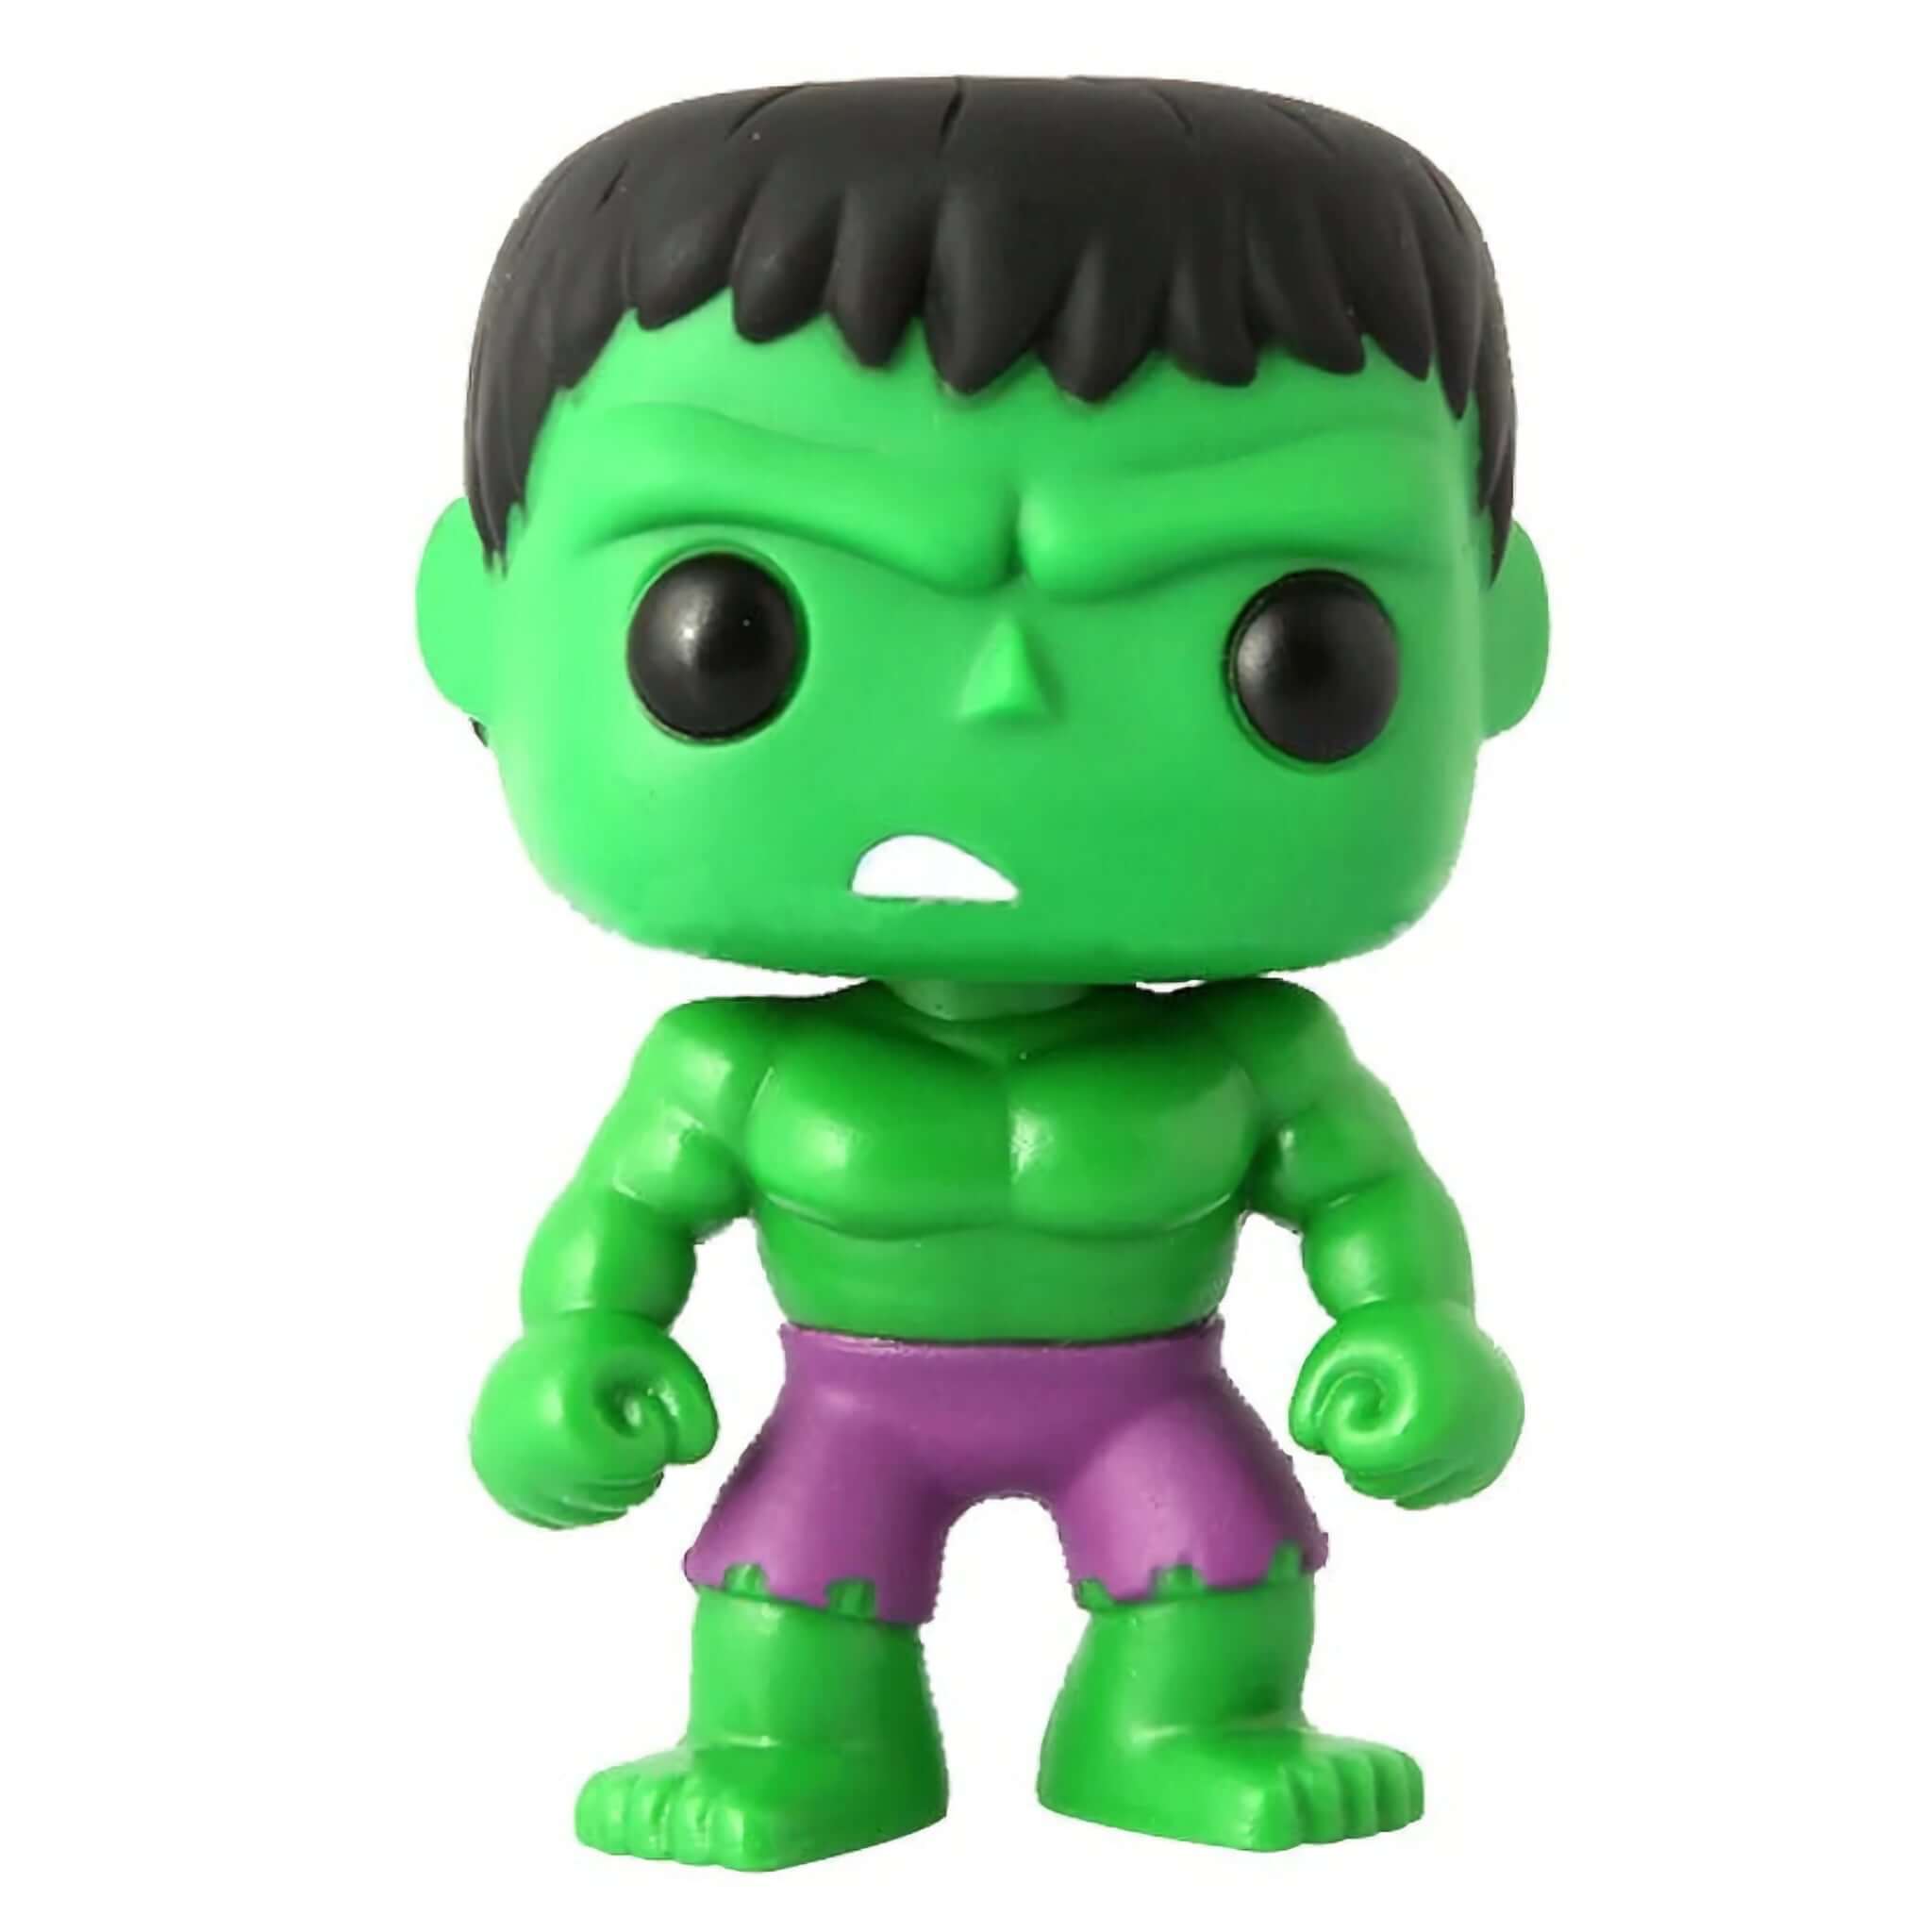 The Hulk Funko Pop!-Jingle Truck Toys